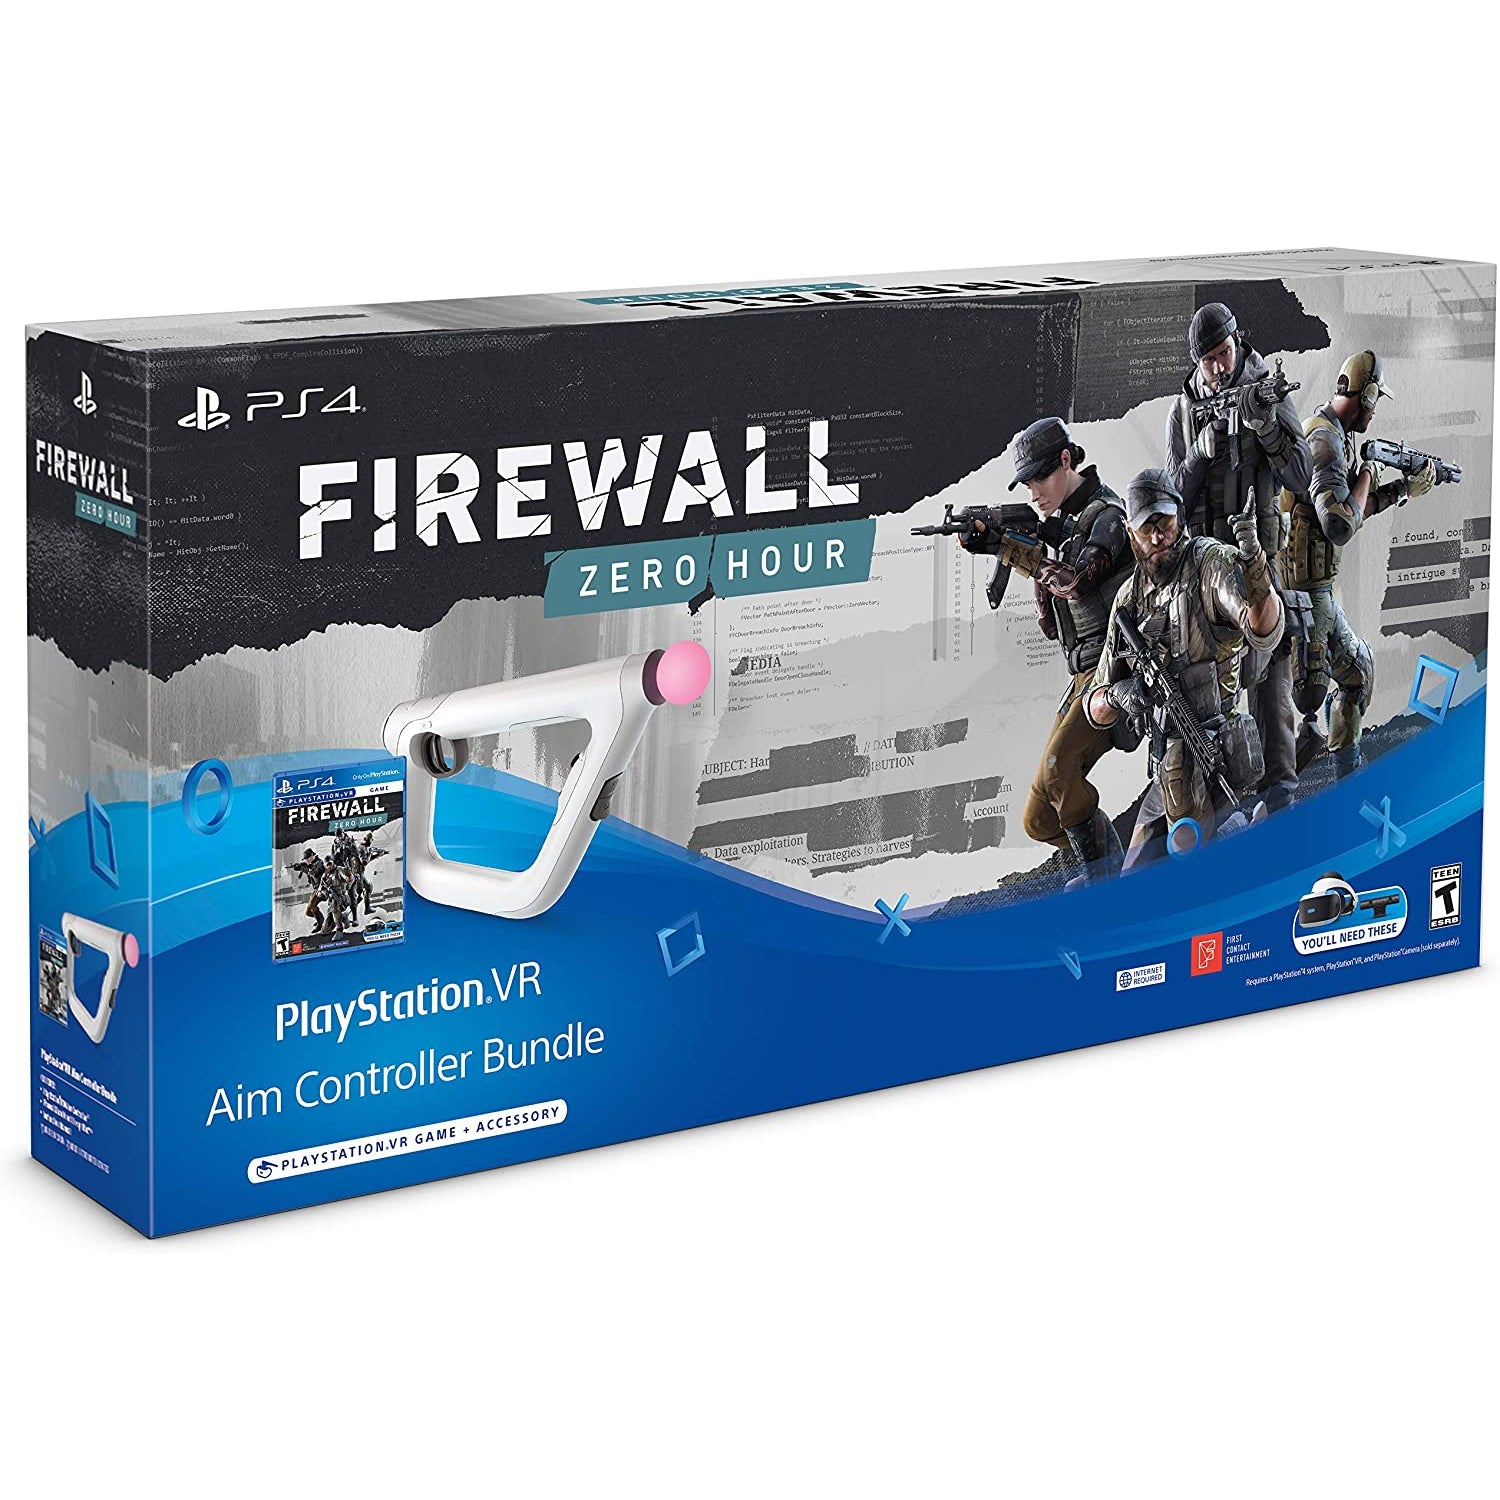 Firewall: Zero Hour VR - PlayStation VR Aim Controller Bundle forPlayStation 4